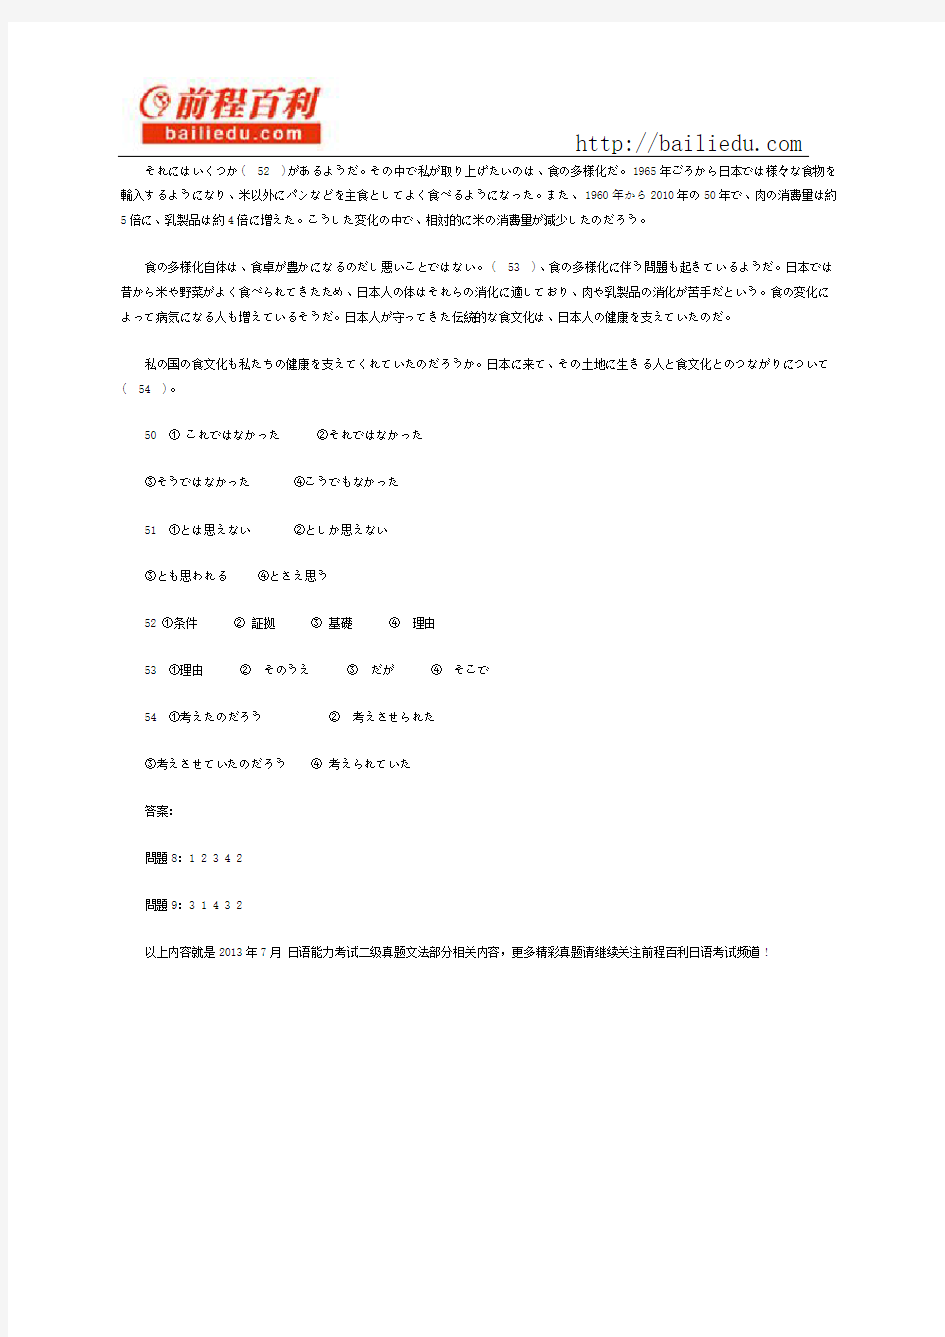 2013年7月日语能力考二级真题文法部分02